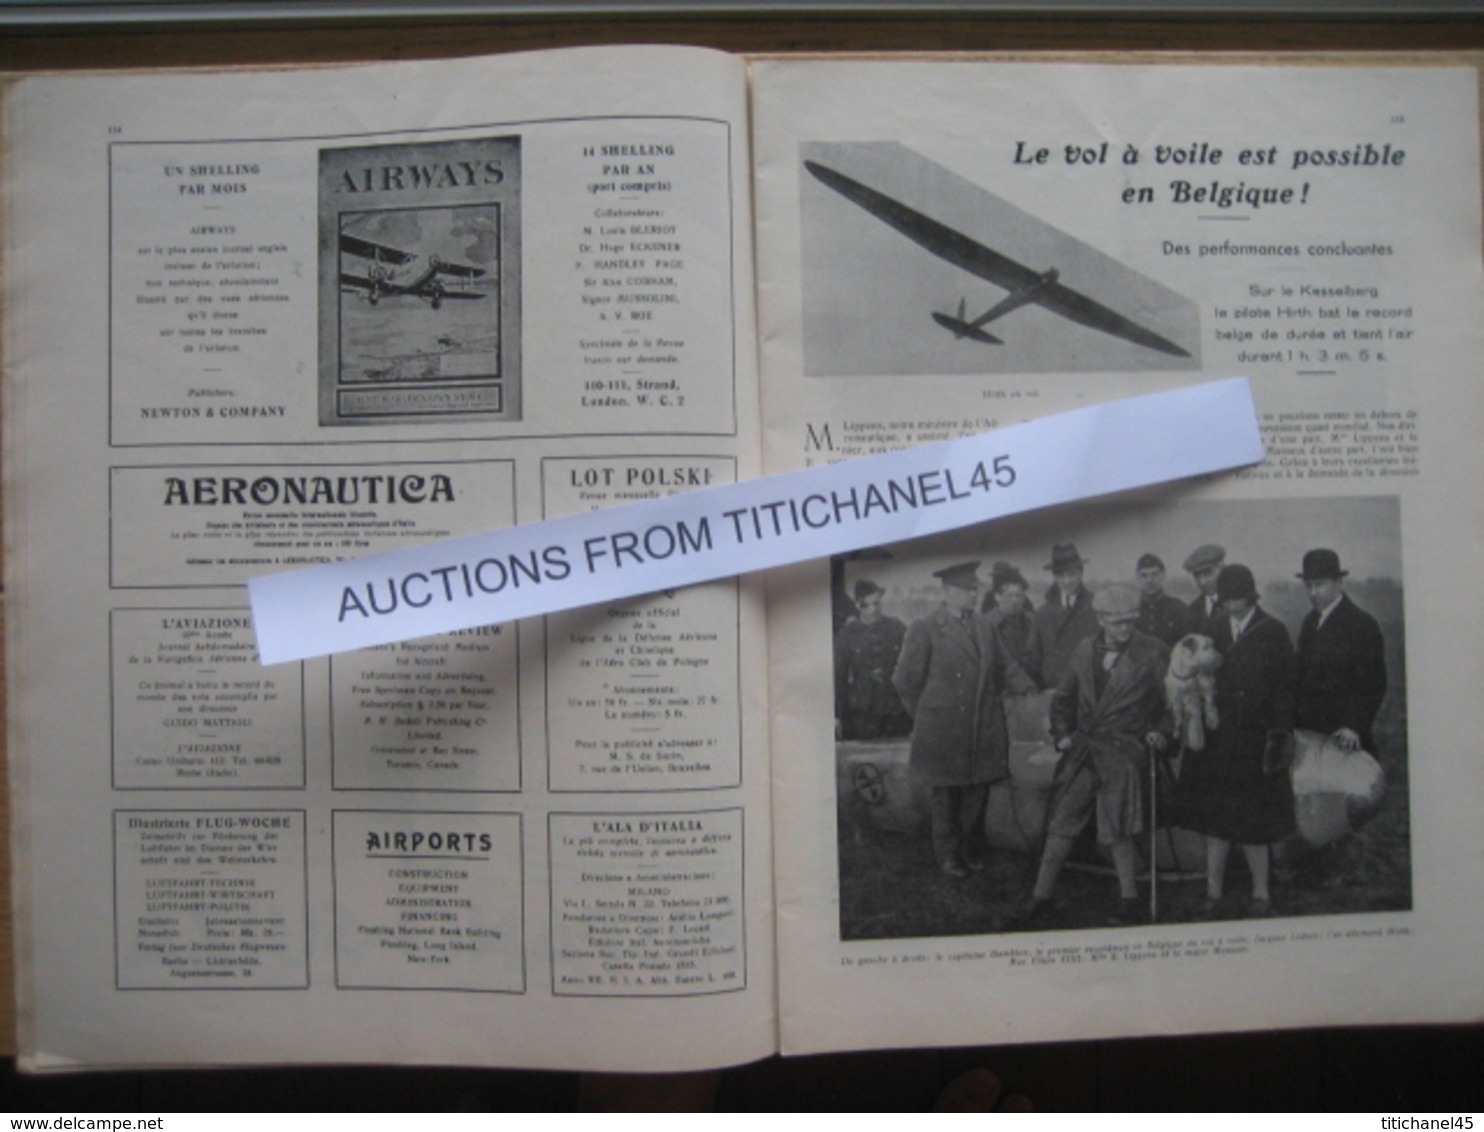 LA CONQUETE DE l'AIR 1930 n°2 - CONGO BELGE (16 pages) - ATELIERS de la SABCA - AVIA BH33 - LOUIS BLERIOT - SABENA